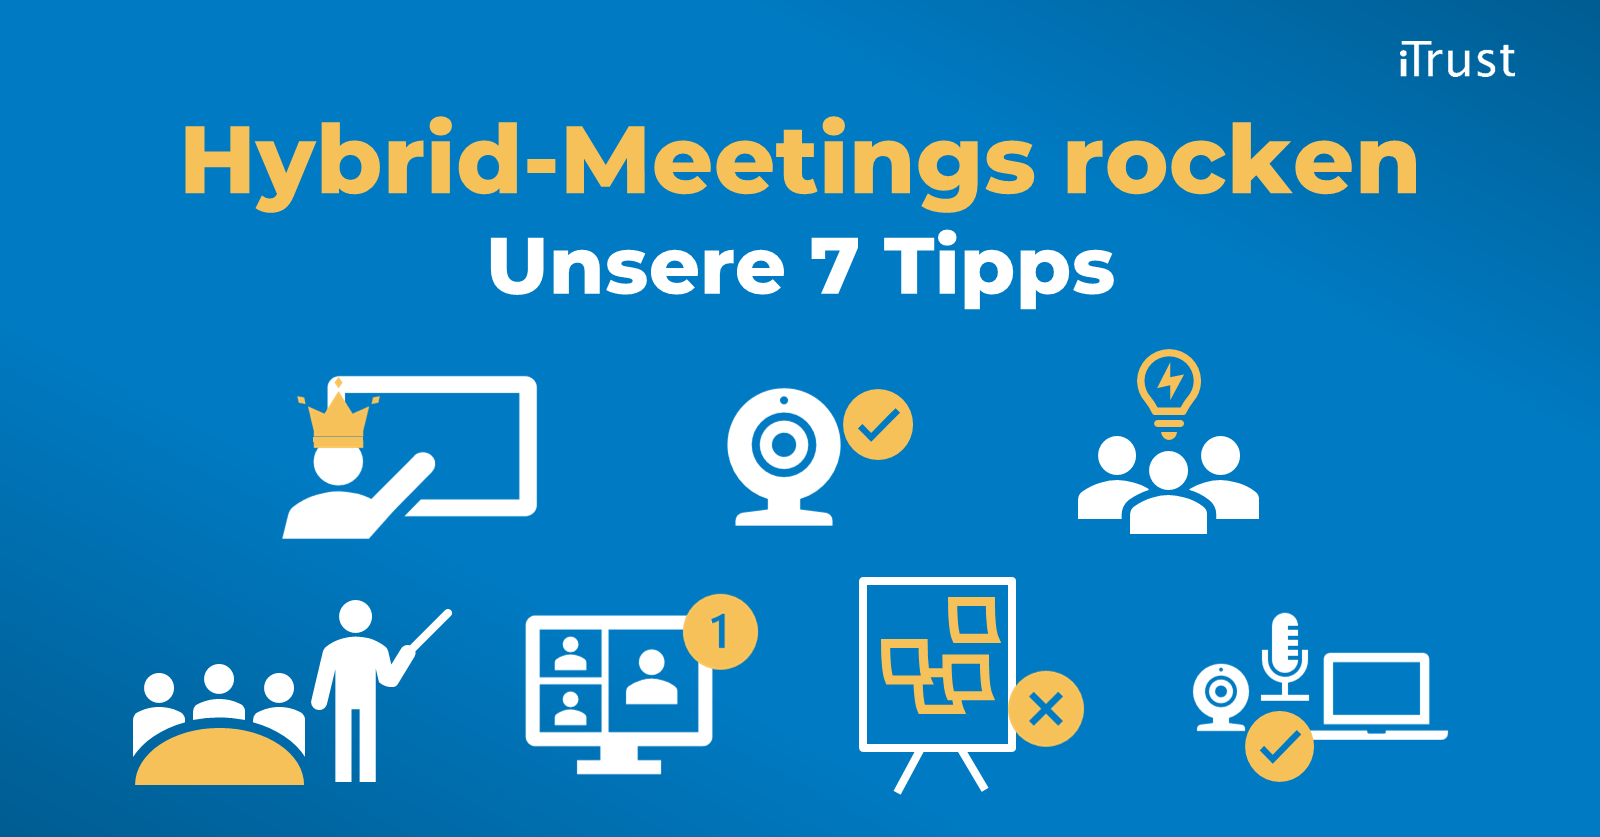 Unsere 7 Hybrid-Meeting-Tipps - Übersicht